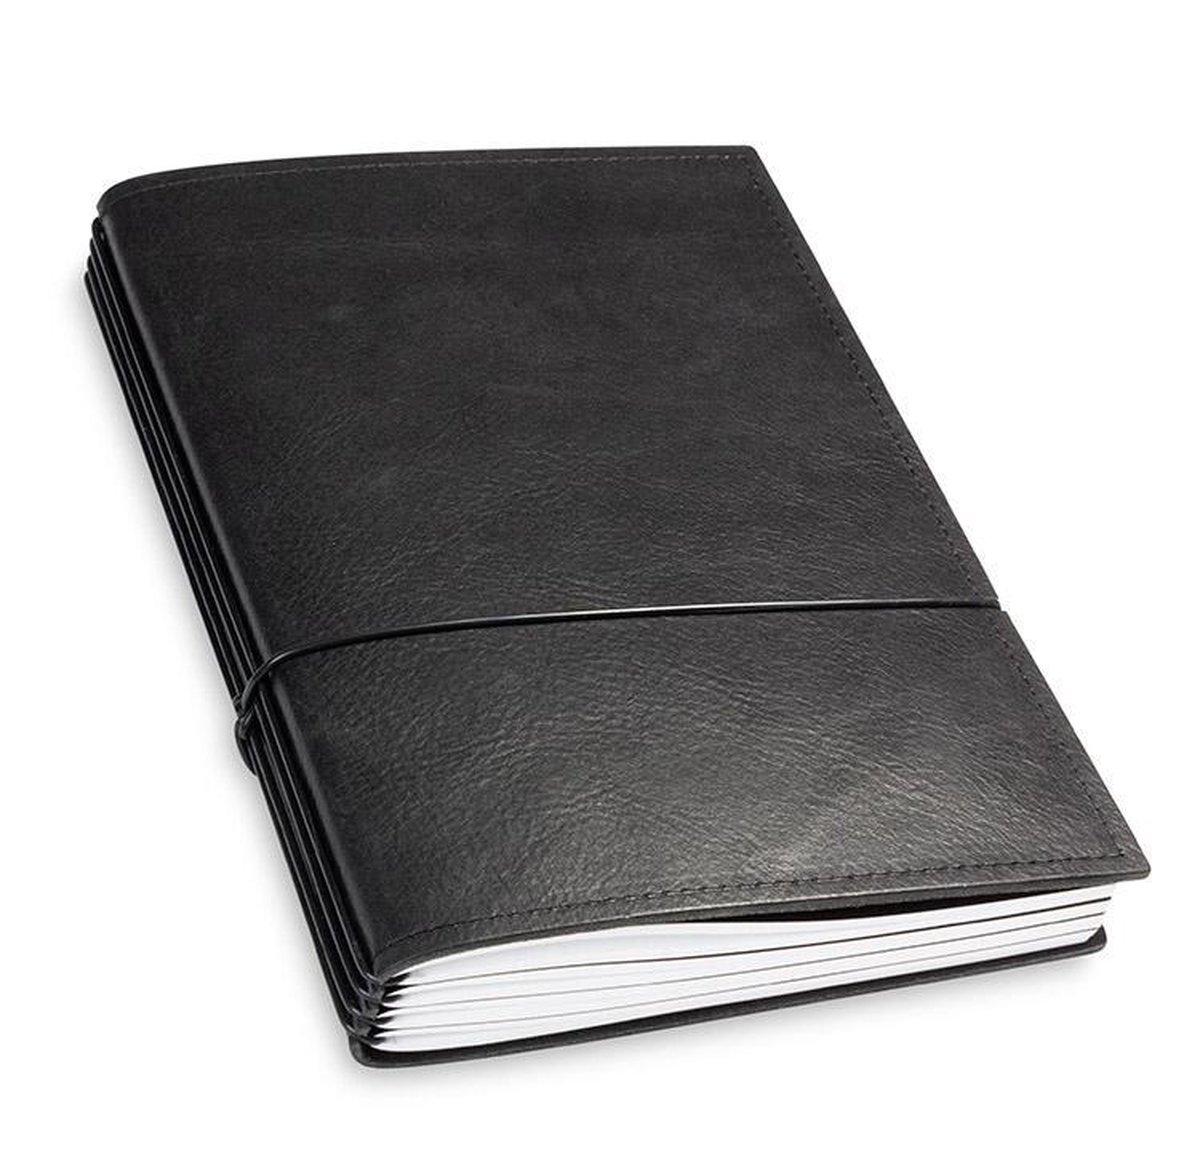 X17 Notebook A5 Leder Natur Zwart - 4 katernen